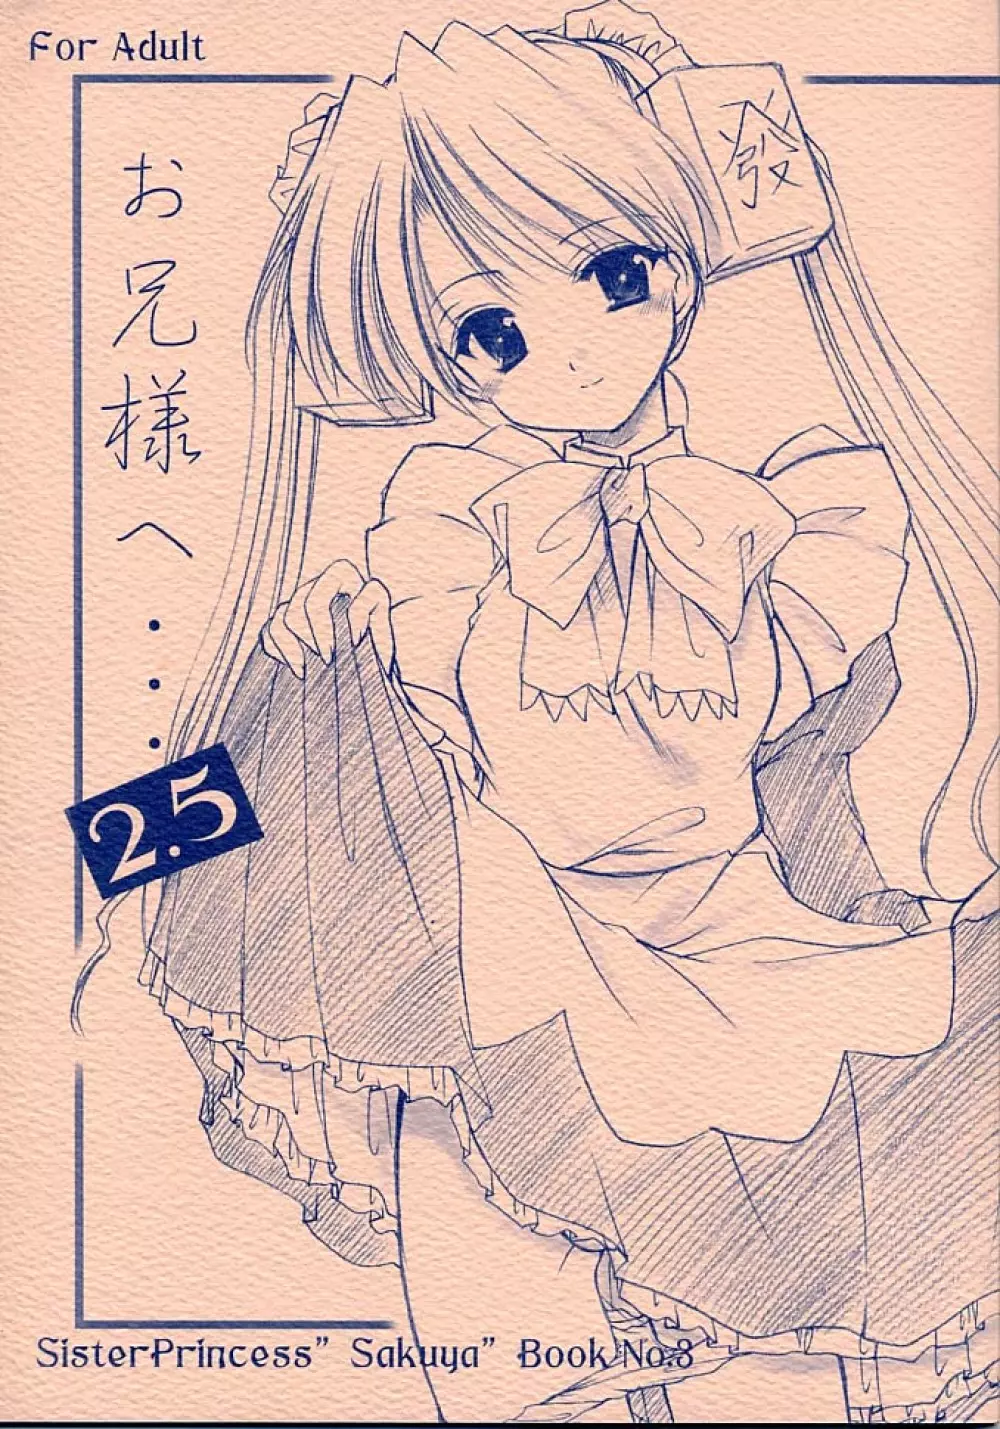 お兄様へ…2.5 Sister Princess “Sakuya” Book No.3 1ページ